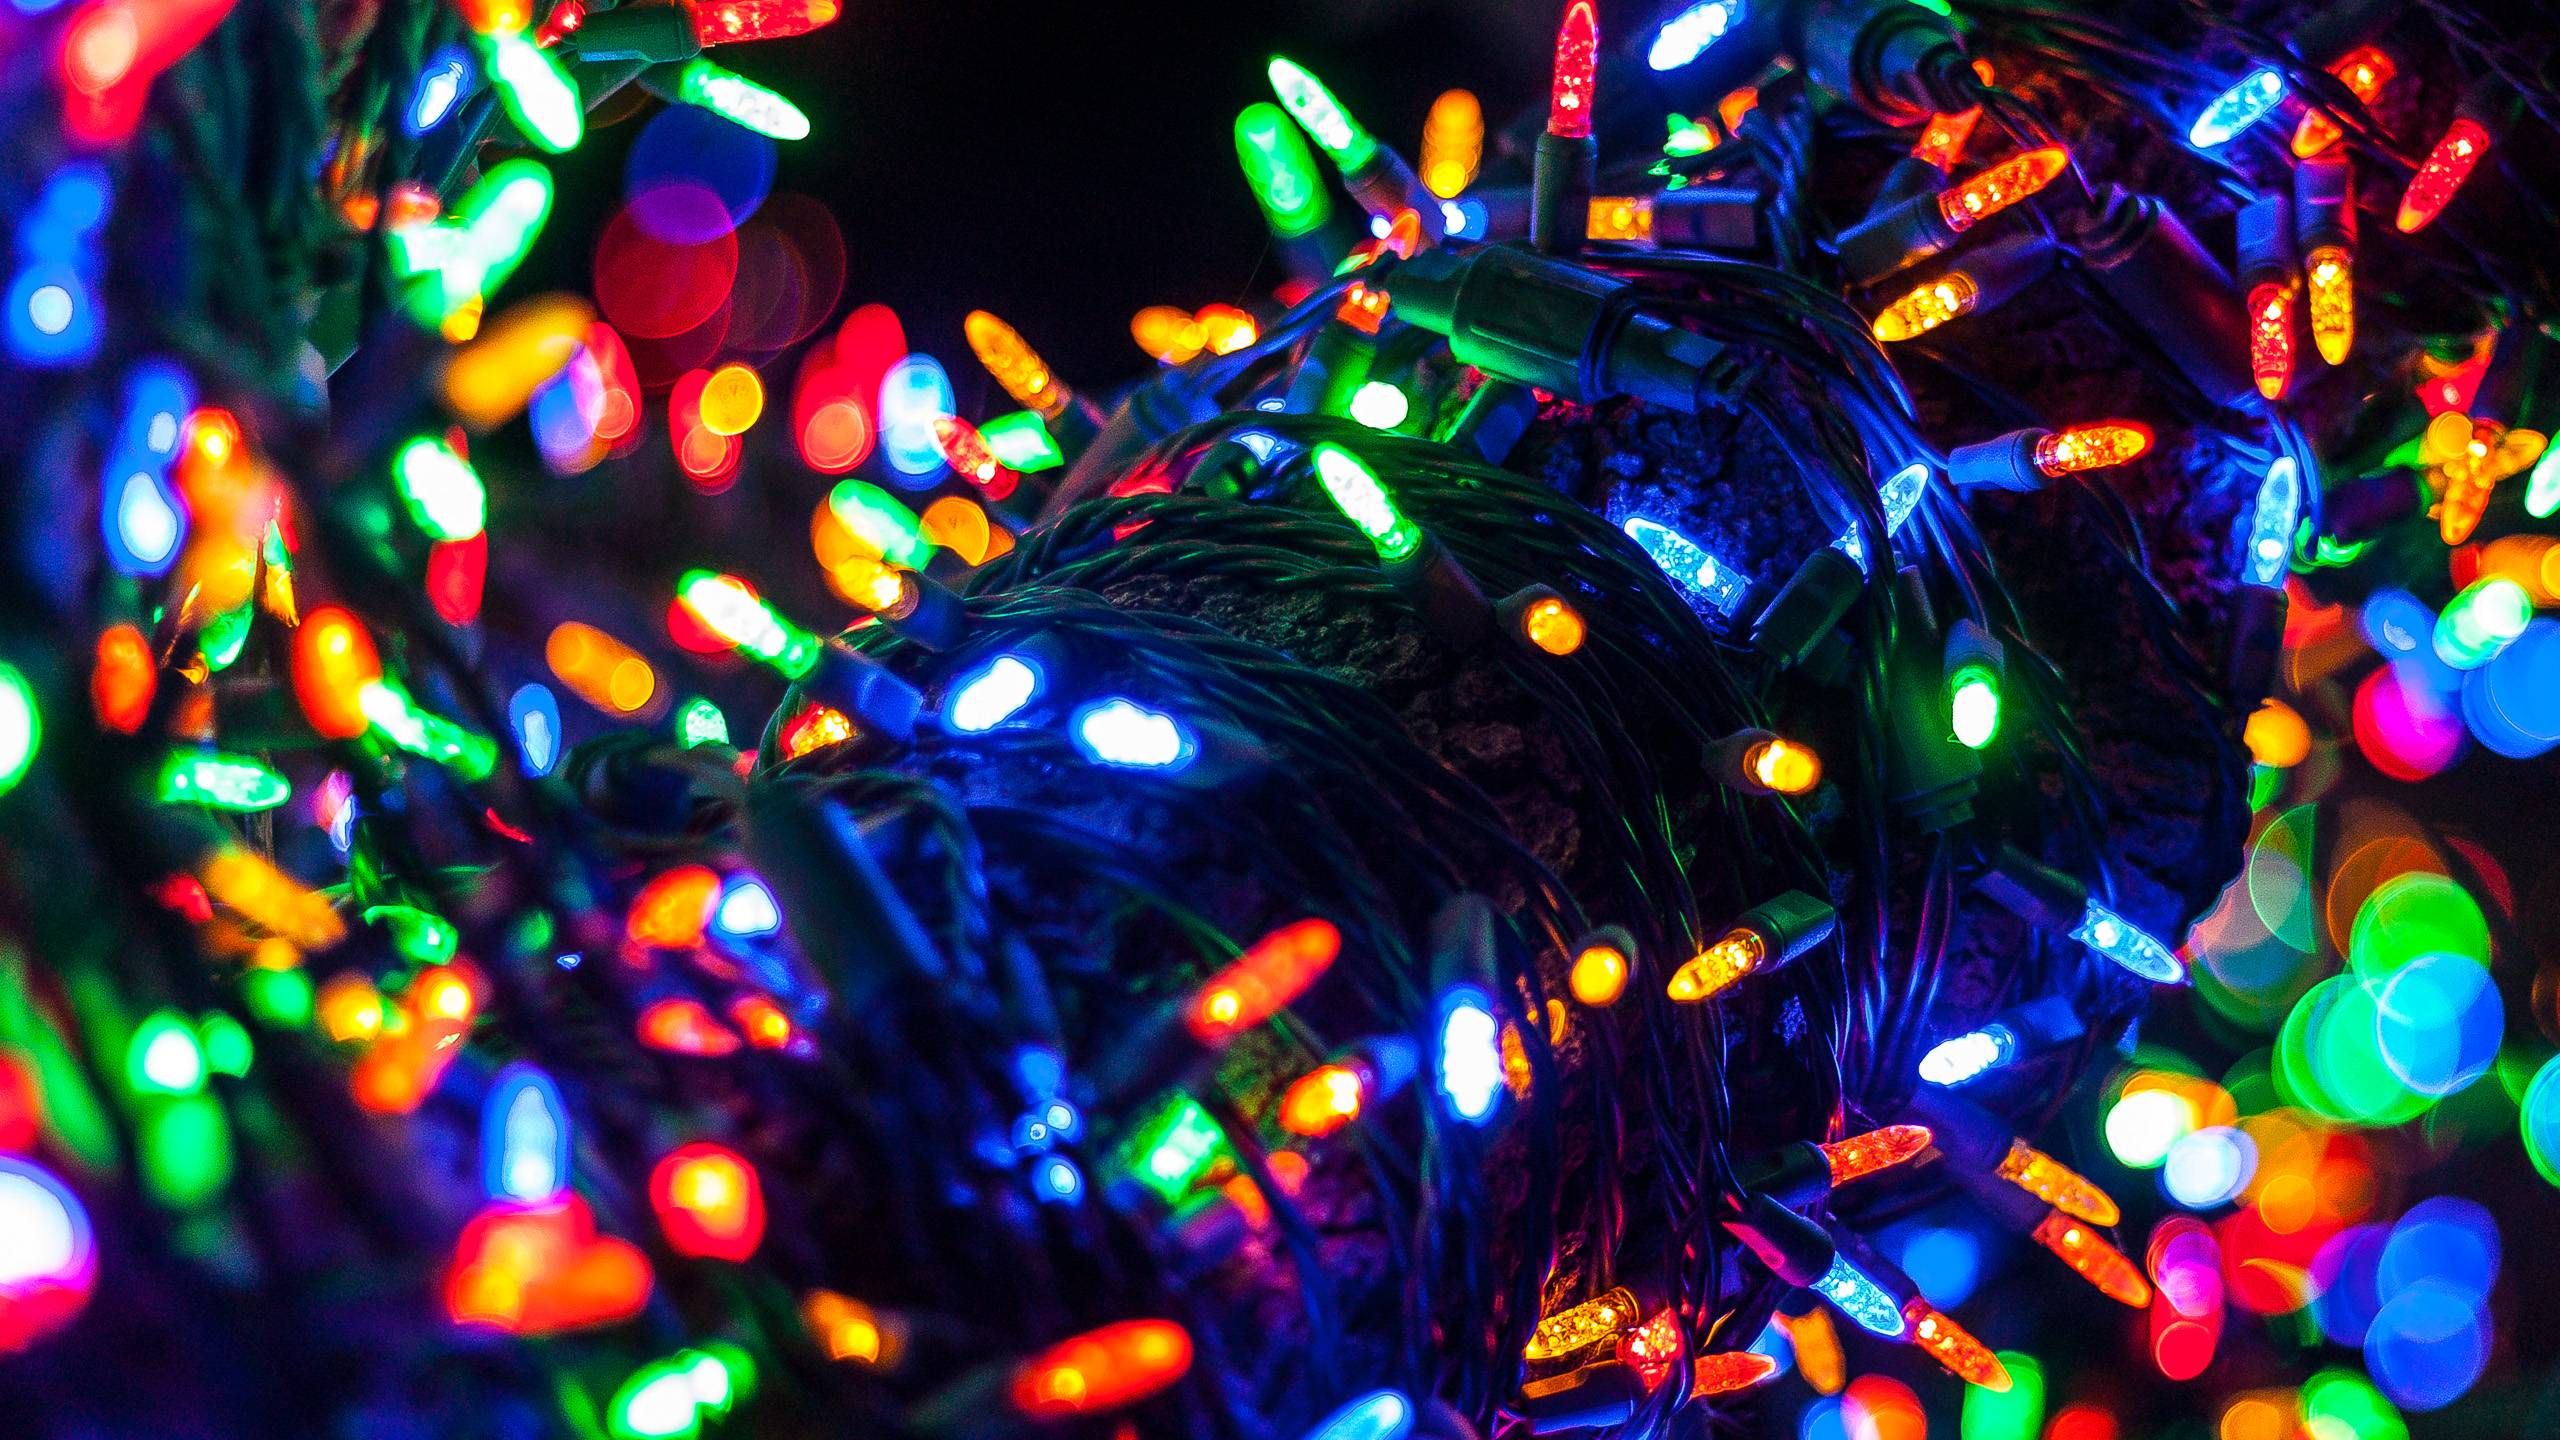 Christmas Tree Lights [2560x1440] • R Wallpaper. Christmas Tree Lighting, Christmas Tree, Tree